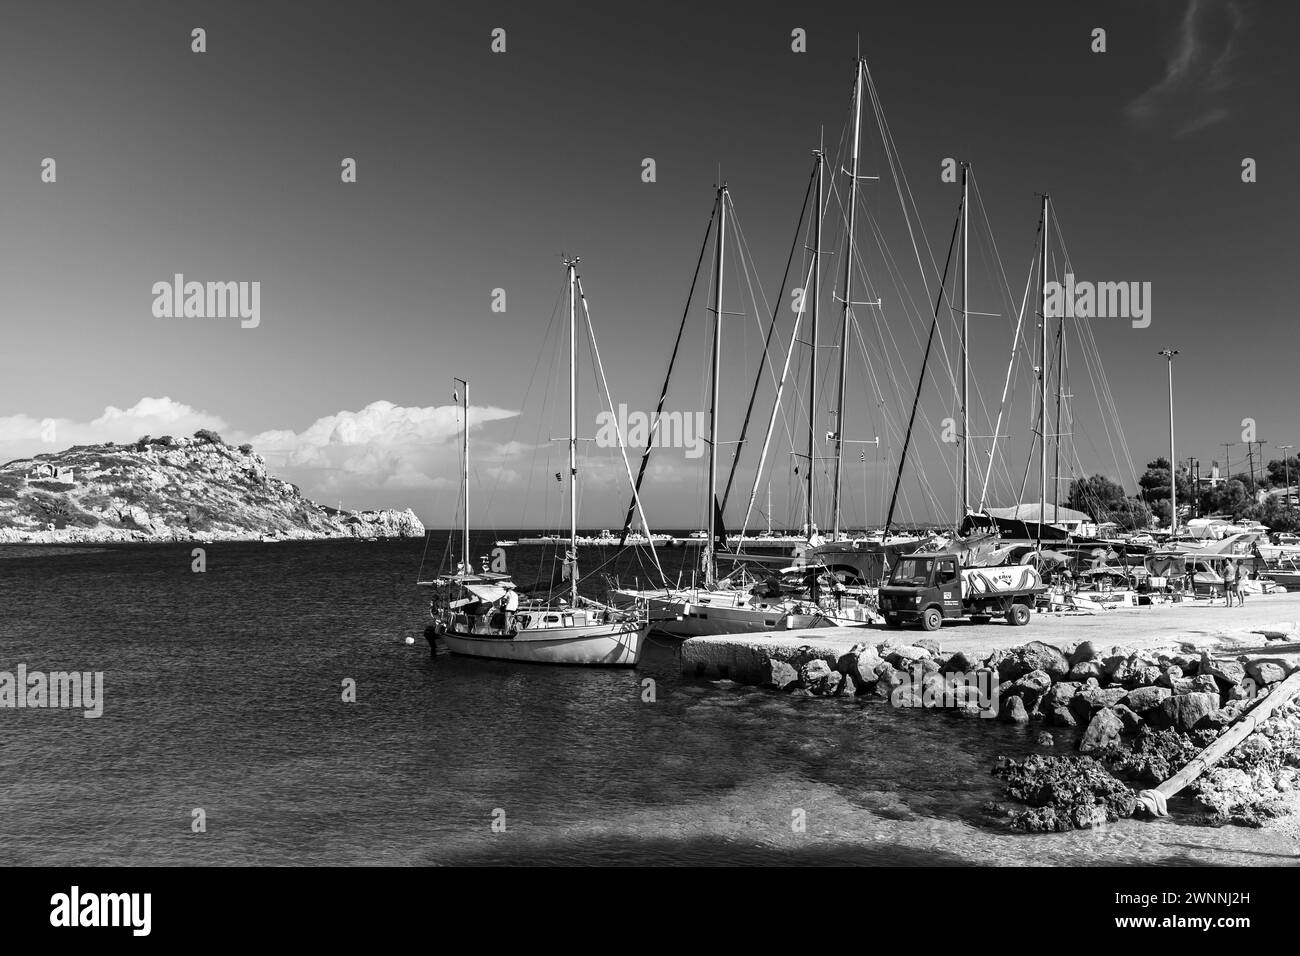 Zakynthos, Grèce - 20 août 2016 : yachts à voile et bateaux de plaisance sont amarrés à Agios Nikolaos, paysage côtier noir et blanc Banque D'Images